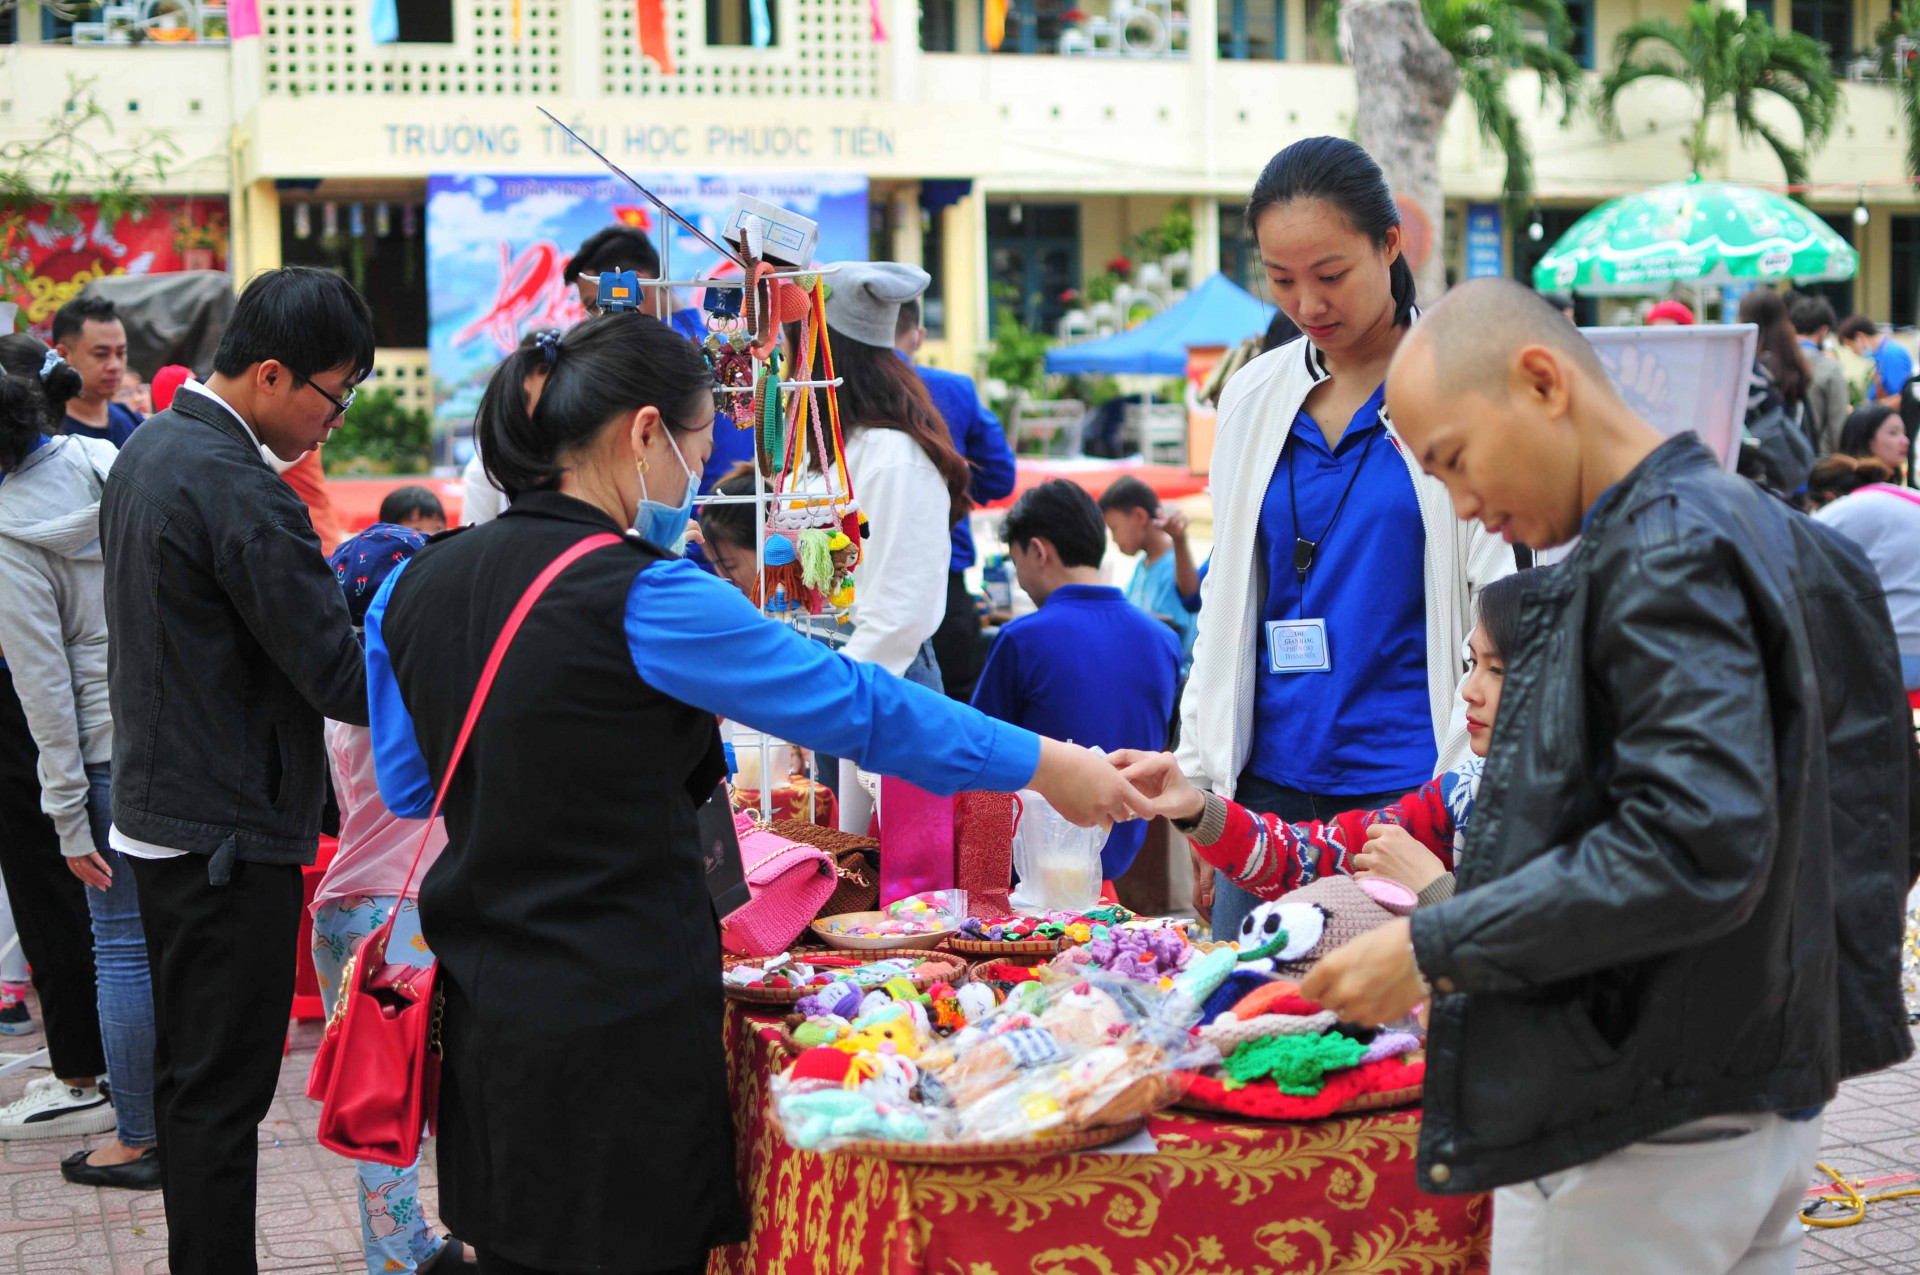 Được biết, kinh phí thu được từ phiên chợ, Đoàn Khối nội thành sẽ gây quỹ để tổ chức chương trình Xuân tình nguyện tại huyện Khánh Sơn